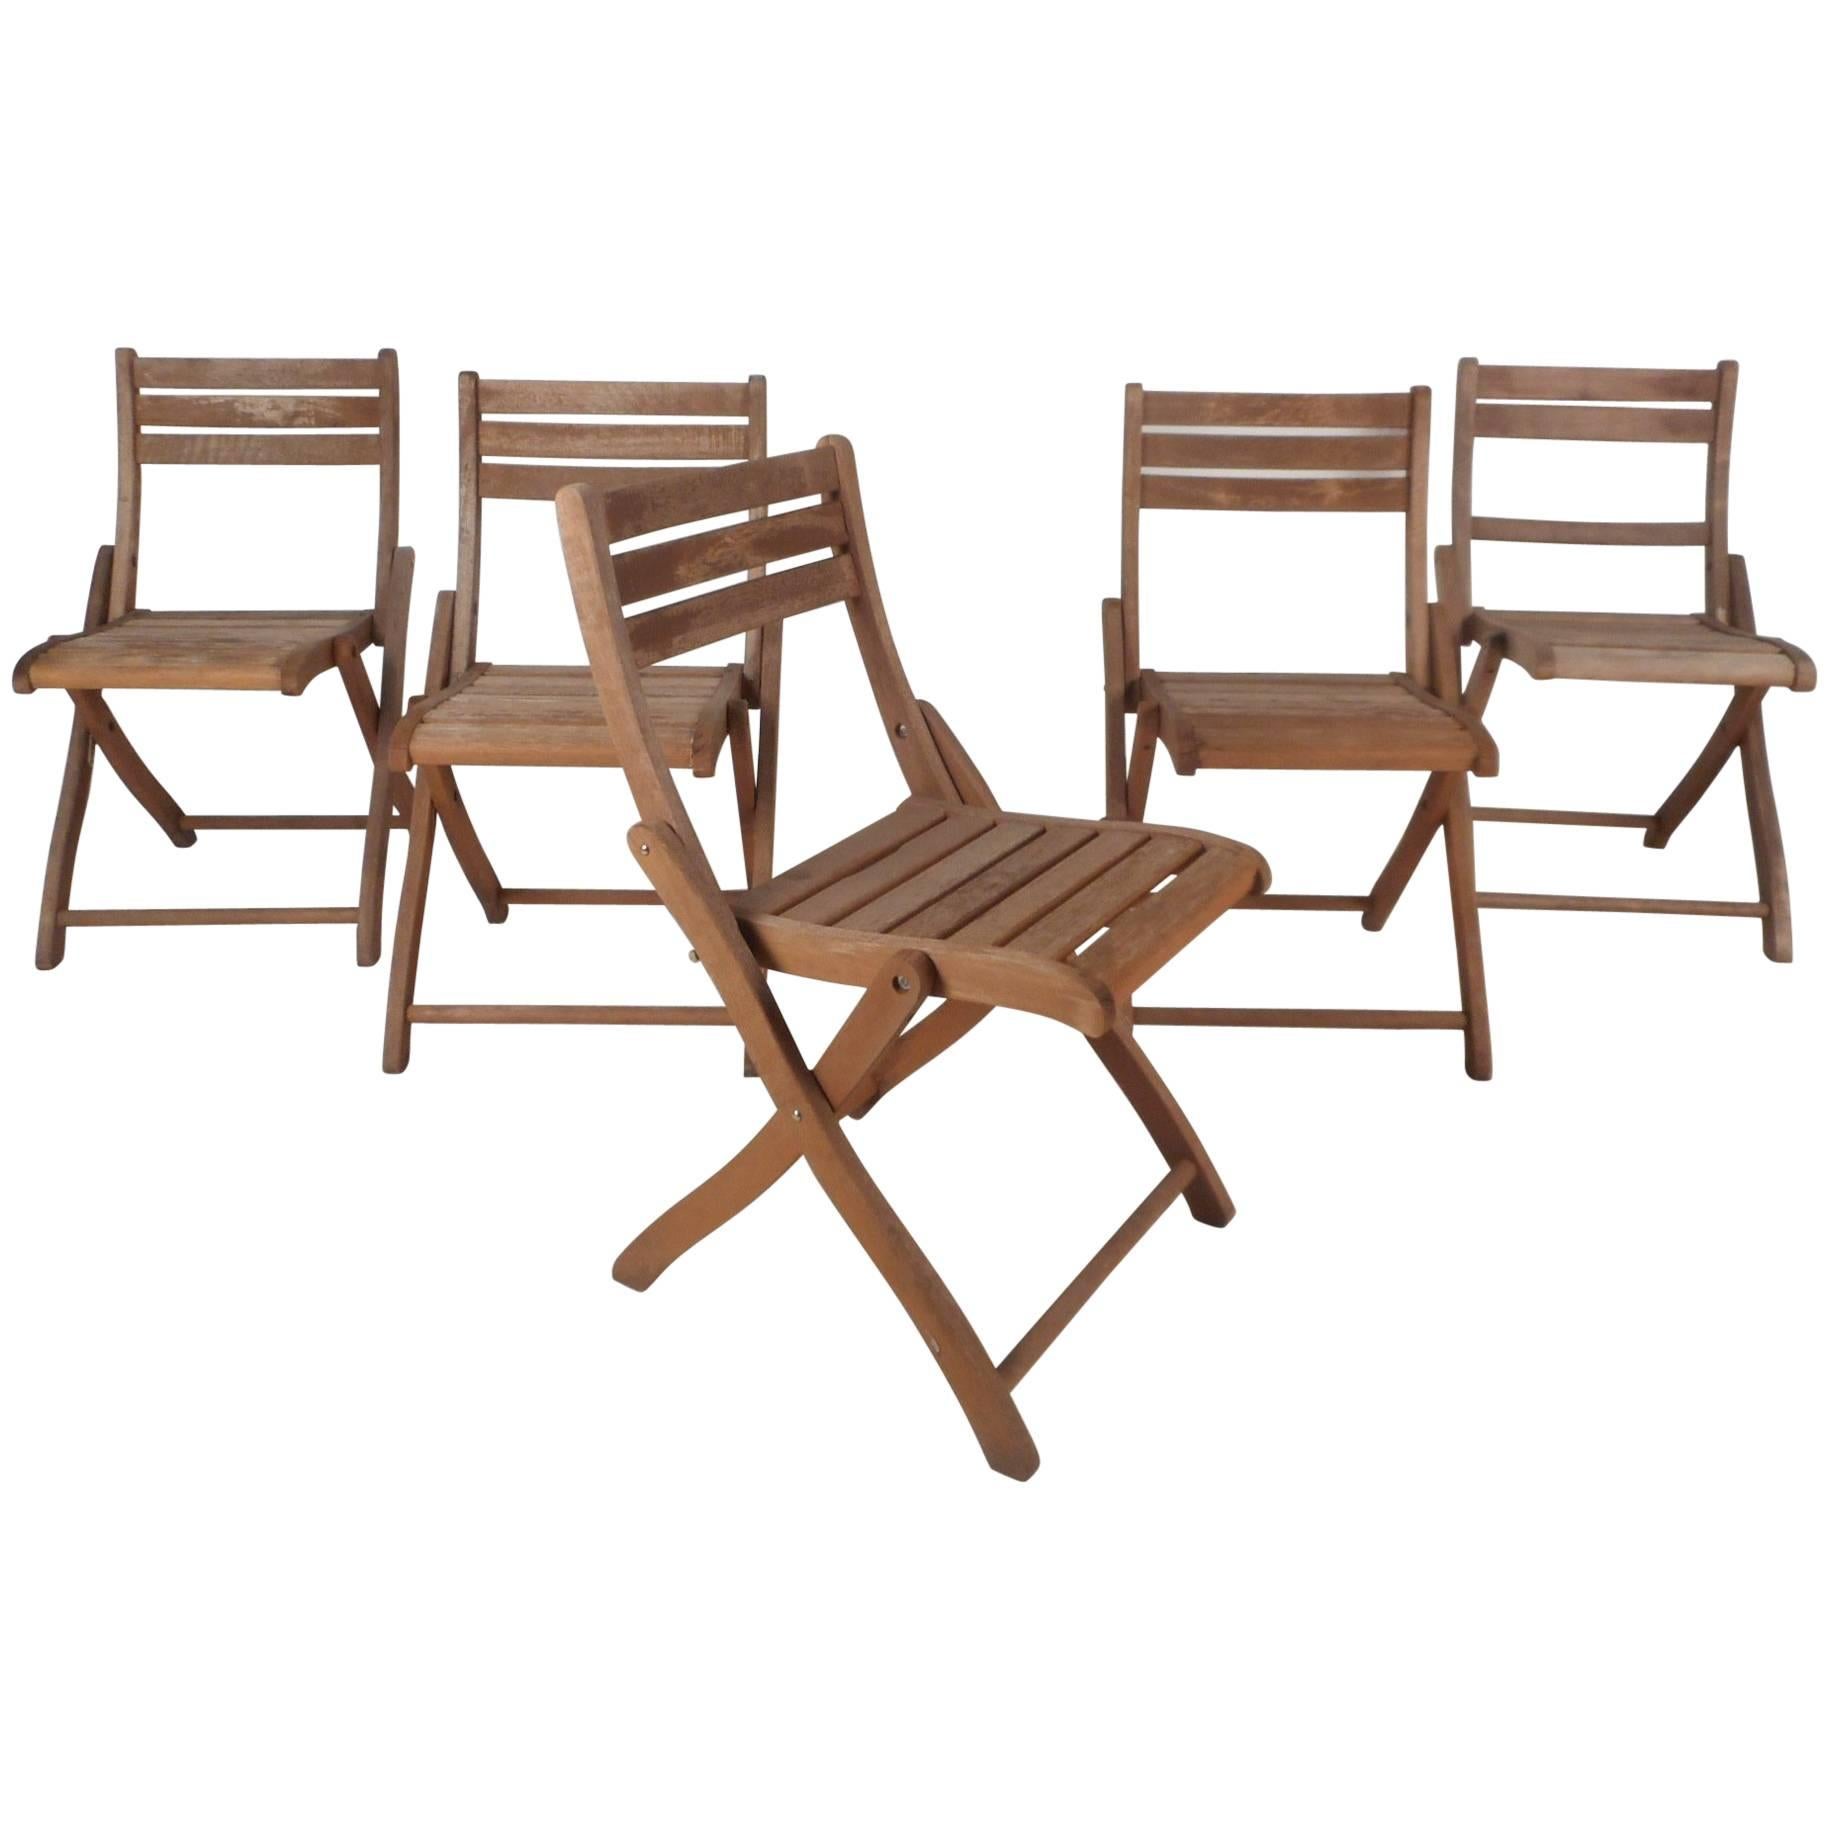 Ensemble de cinq chaises pliantes en bois de style mi-siècle moderne